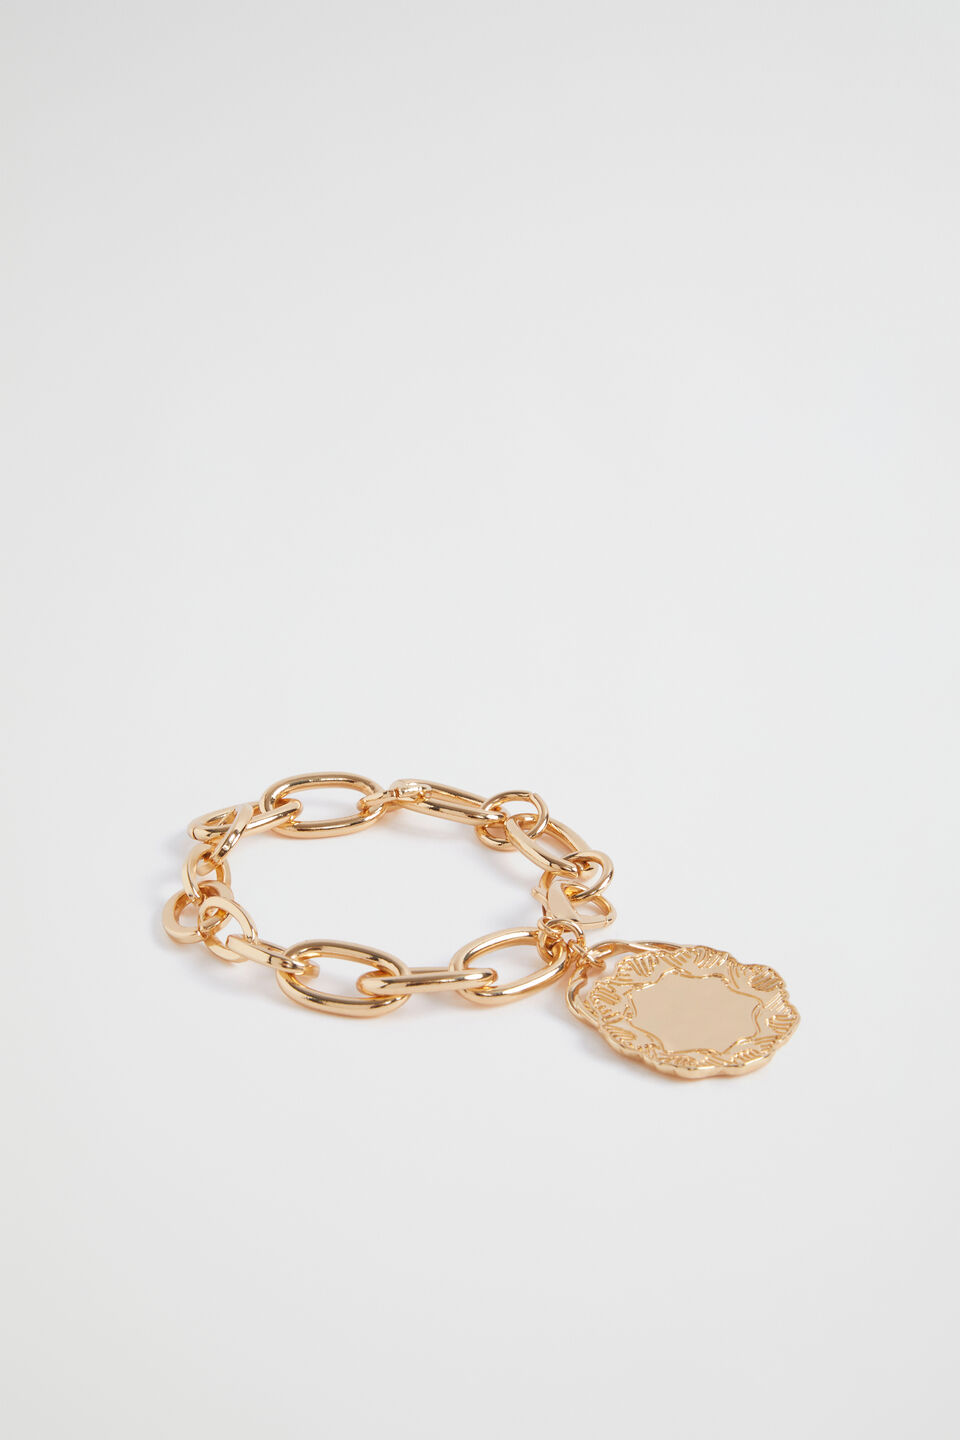 Coin Charm Bracelet  Gold